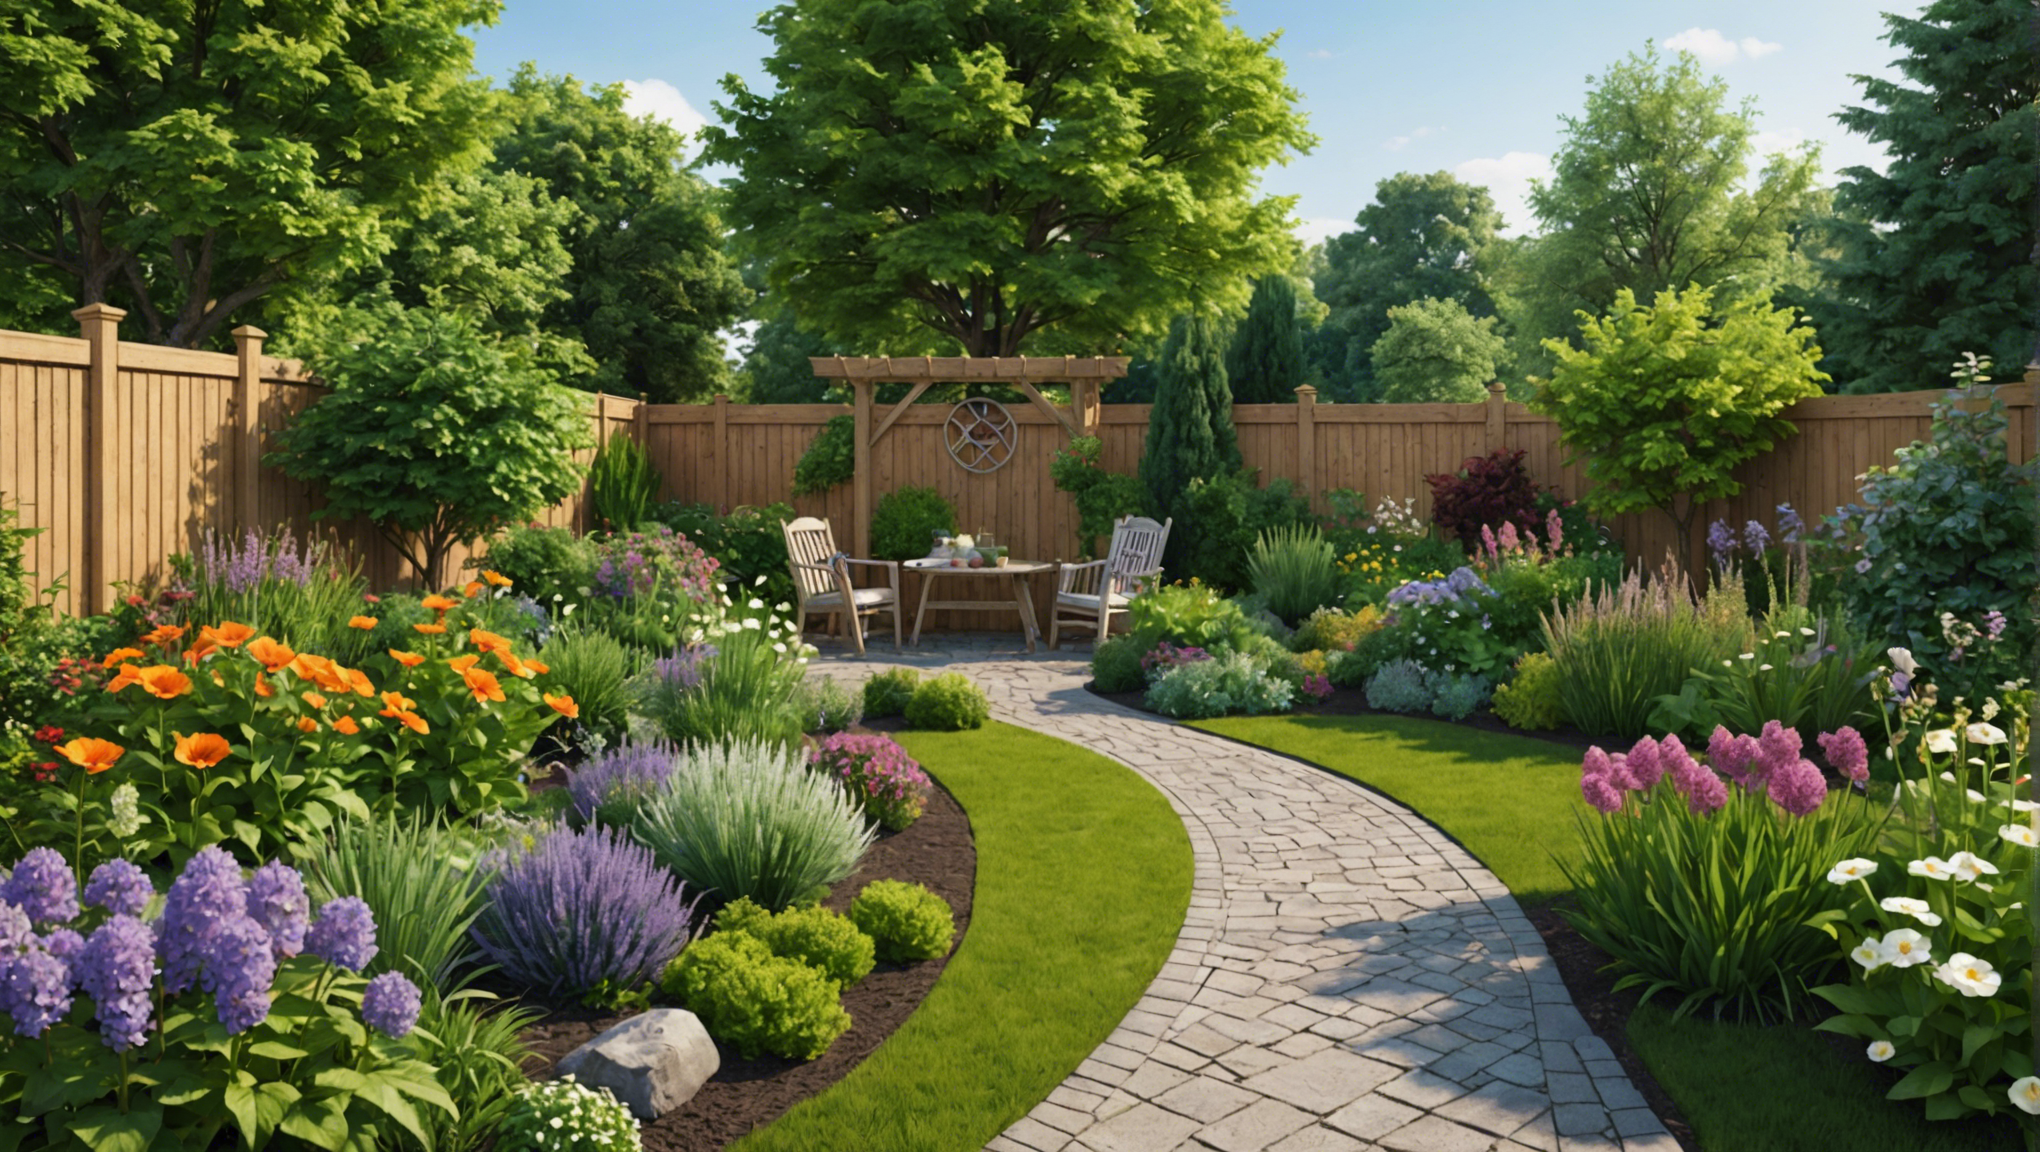 découvrez des idées créatives et fonctionnelles pour aménager votre jardin. conseils d'aménagement et astuces pratiques pour créer un espace extérieur agréable et original.